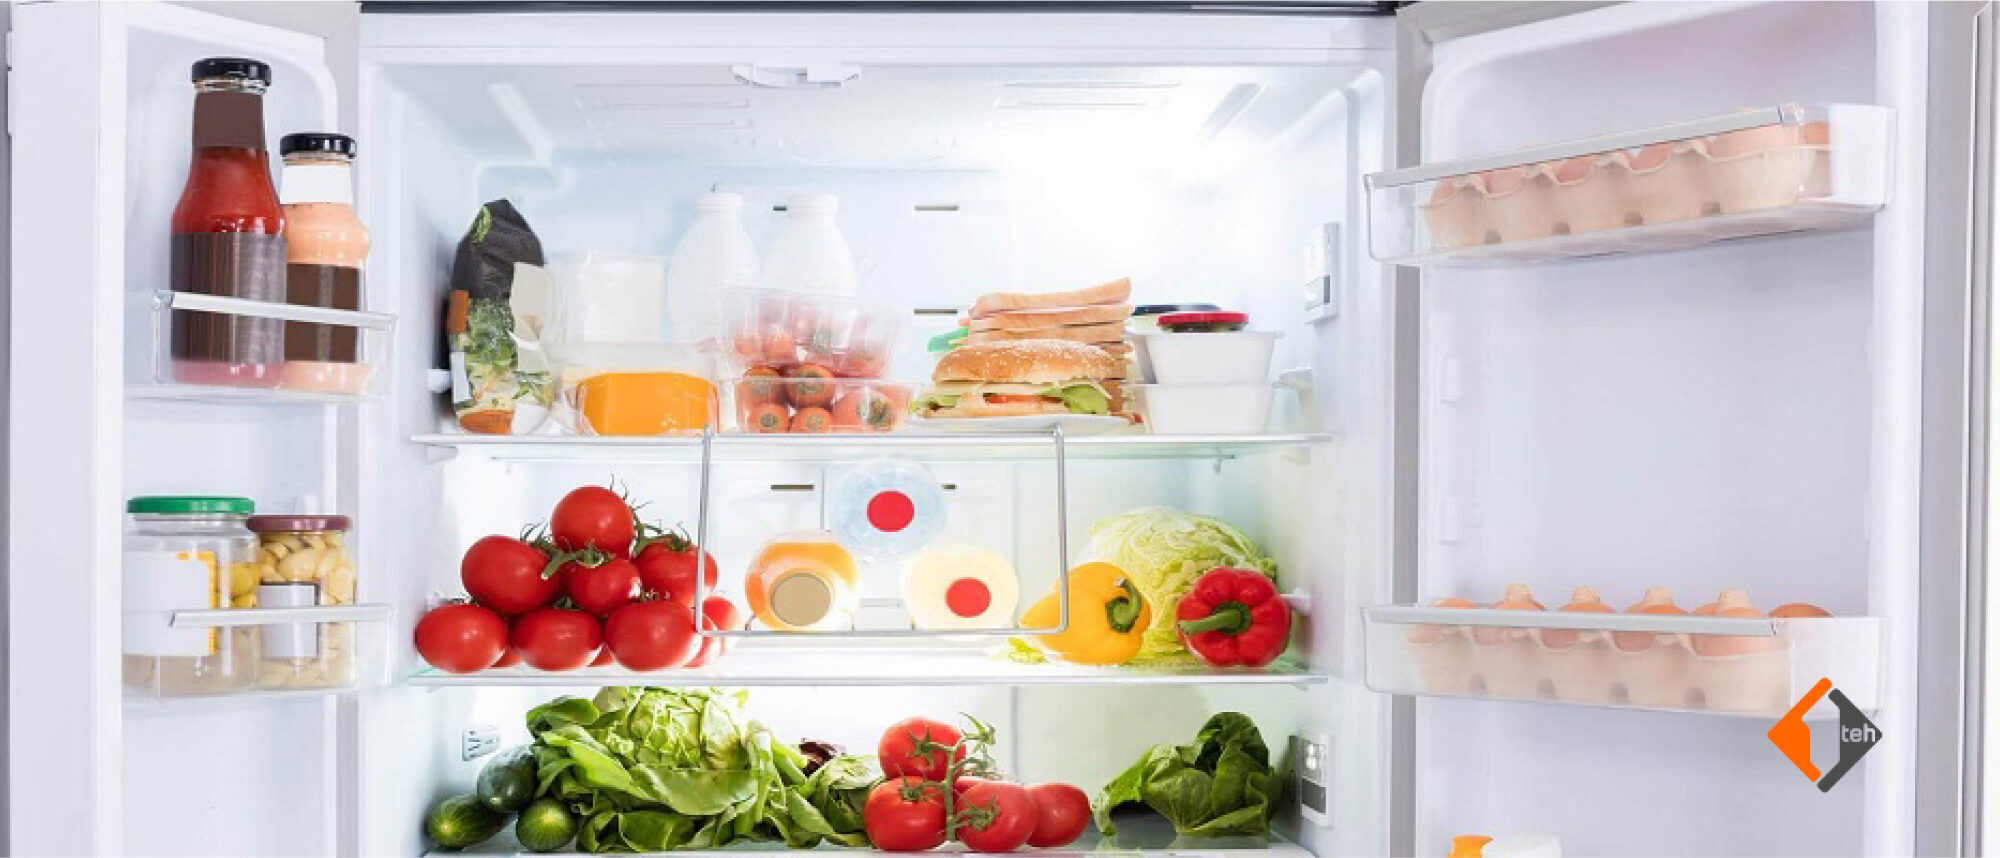 Новые холодильники Hotpoint с функцией быстрой заморозки - 1teh.by